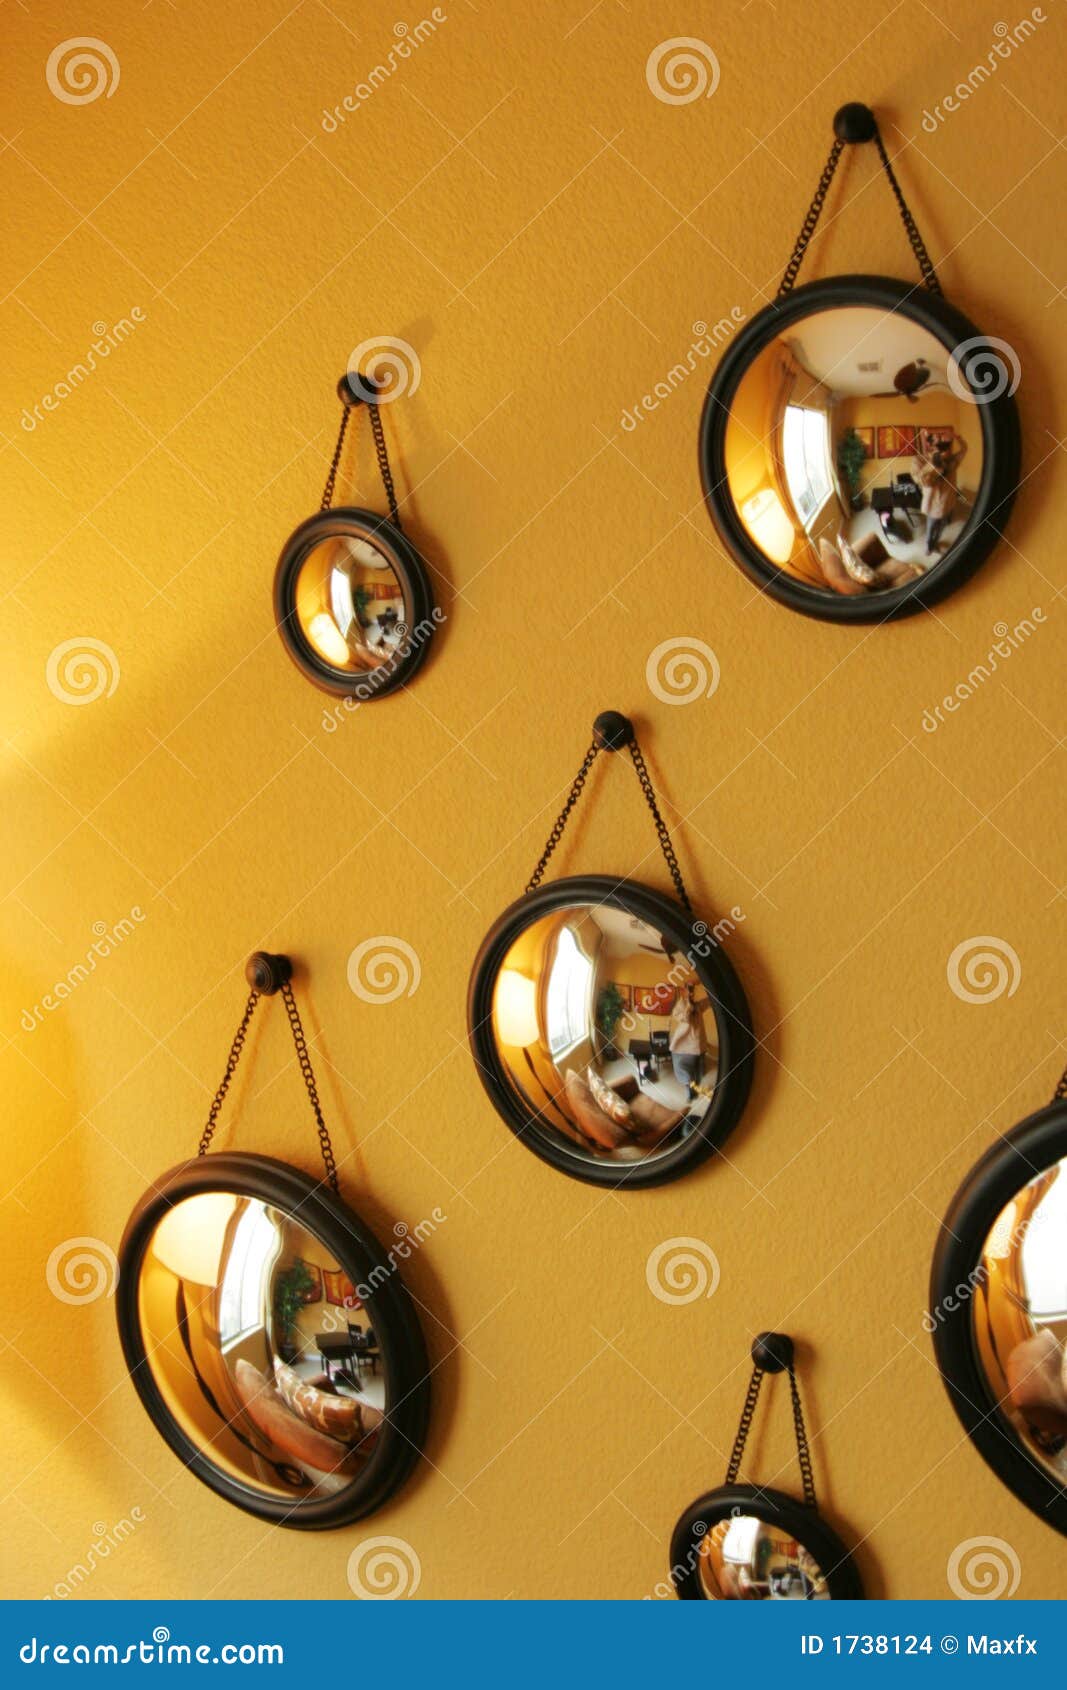 scherp Verbinding Hen Decoratieve Spiegels Op De Muur Stock Foto - Image of voorwerpen, ontwerp:  1738124